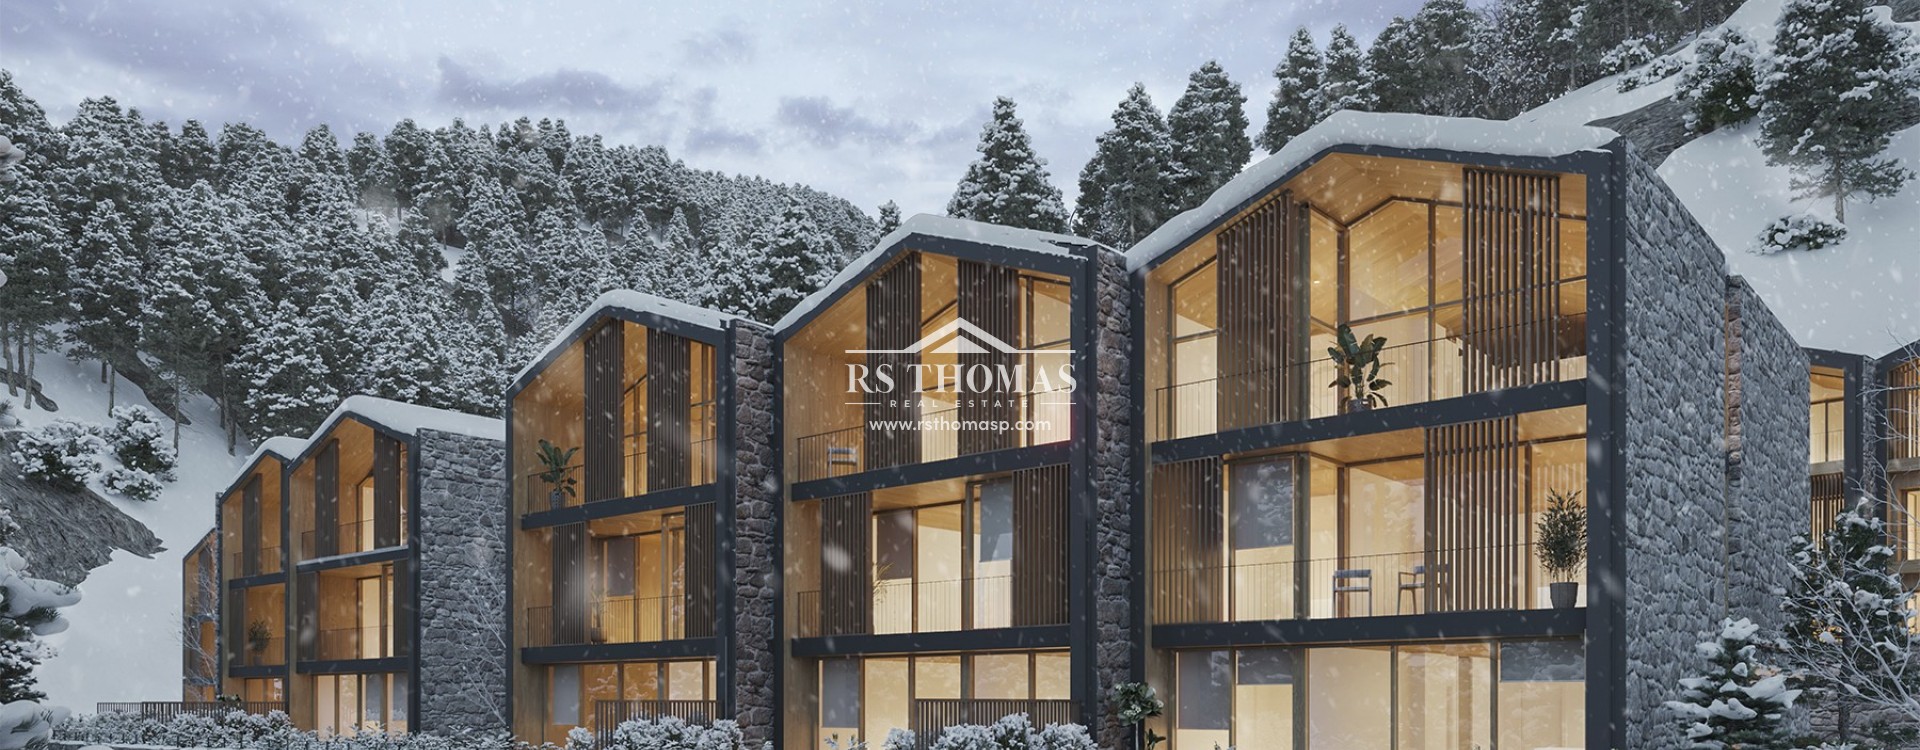 1550 Village Resort | RS Thomas Real Estate